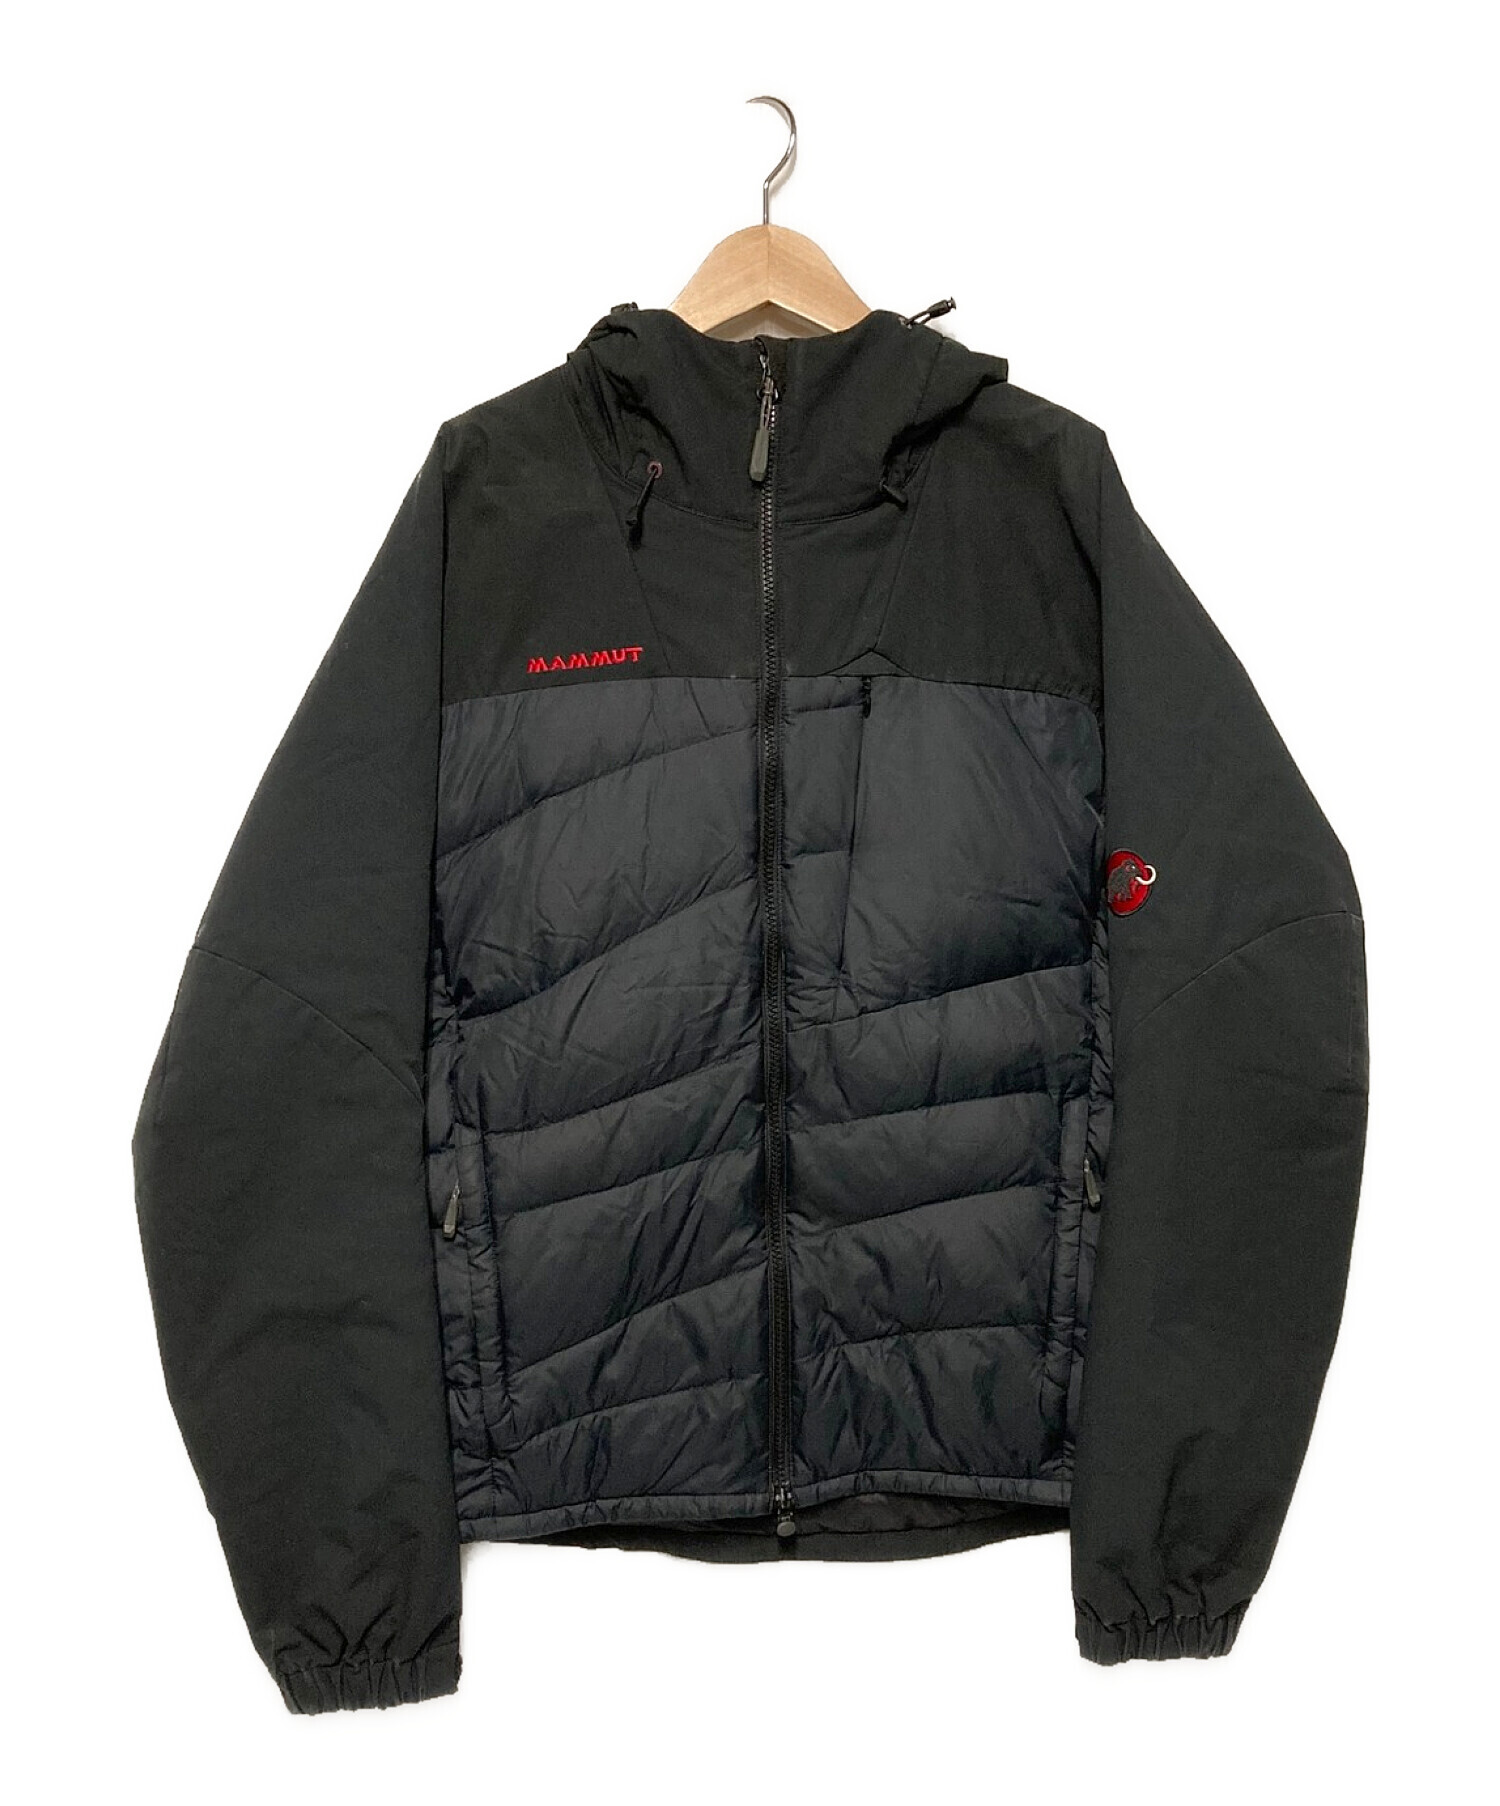 MAMMUT (マムート) ビレイハイブリッドインサレーションジャケット ブラック サイズ:L